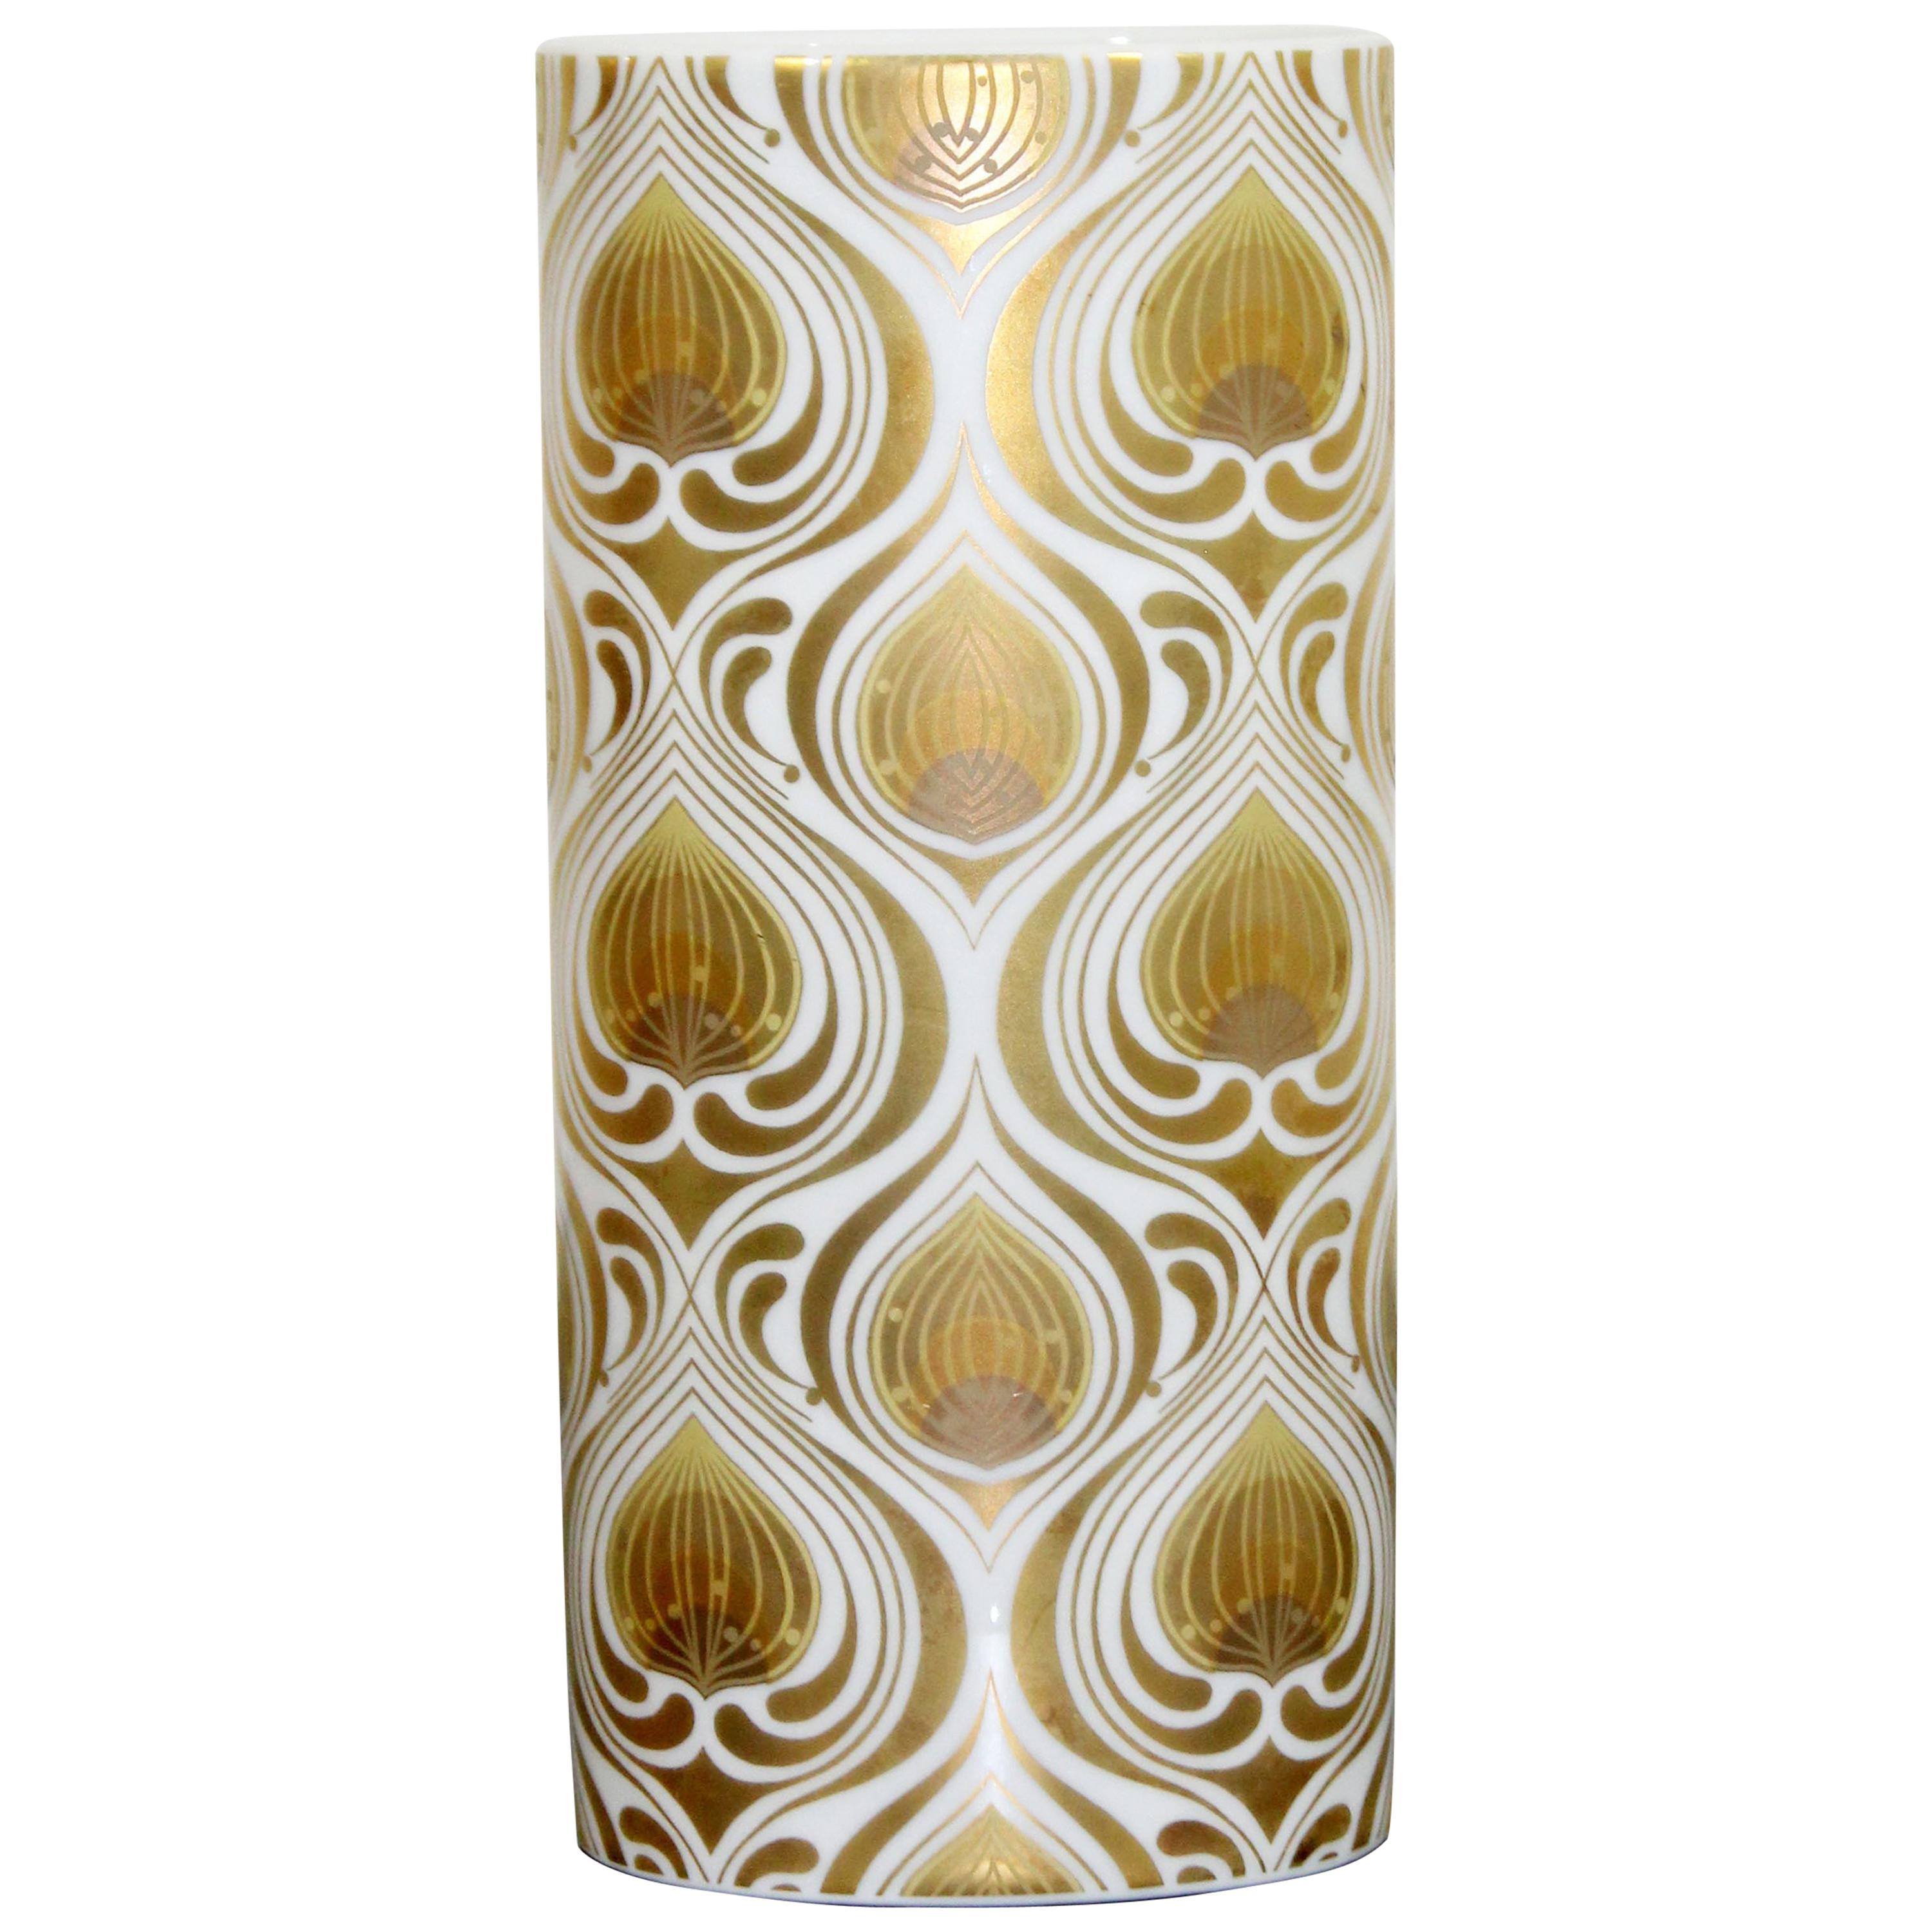 Bjorn Wiinblad for Rosenthal Gold Leaf White Porcelain Vase Vessel, Germany